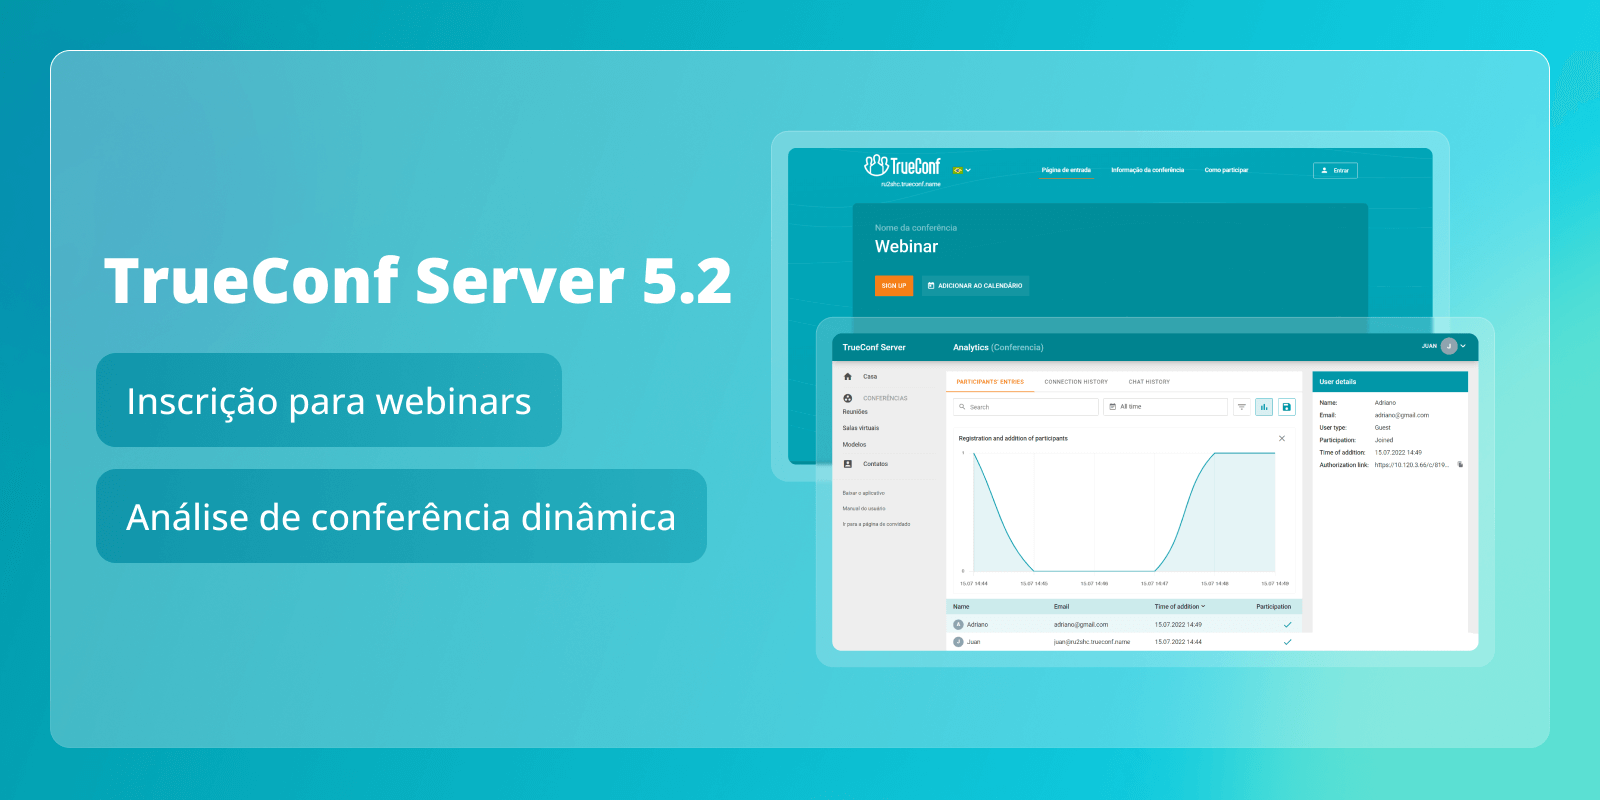 TrueConf Server 5.2: registro para webinars e análises dinâmicas de conferência 8